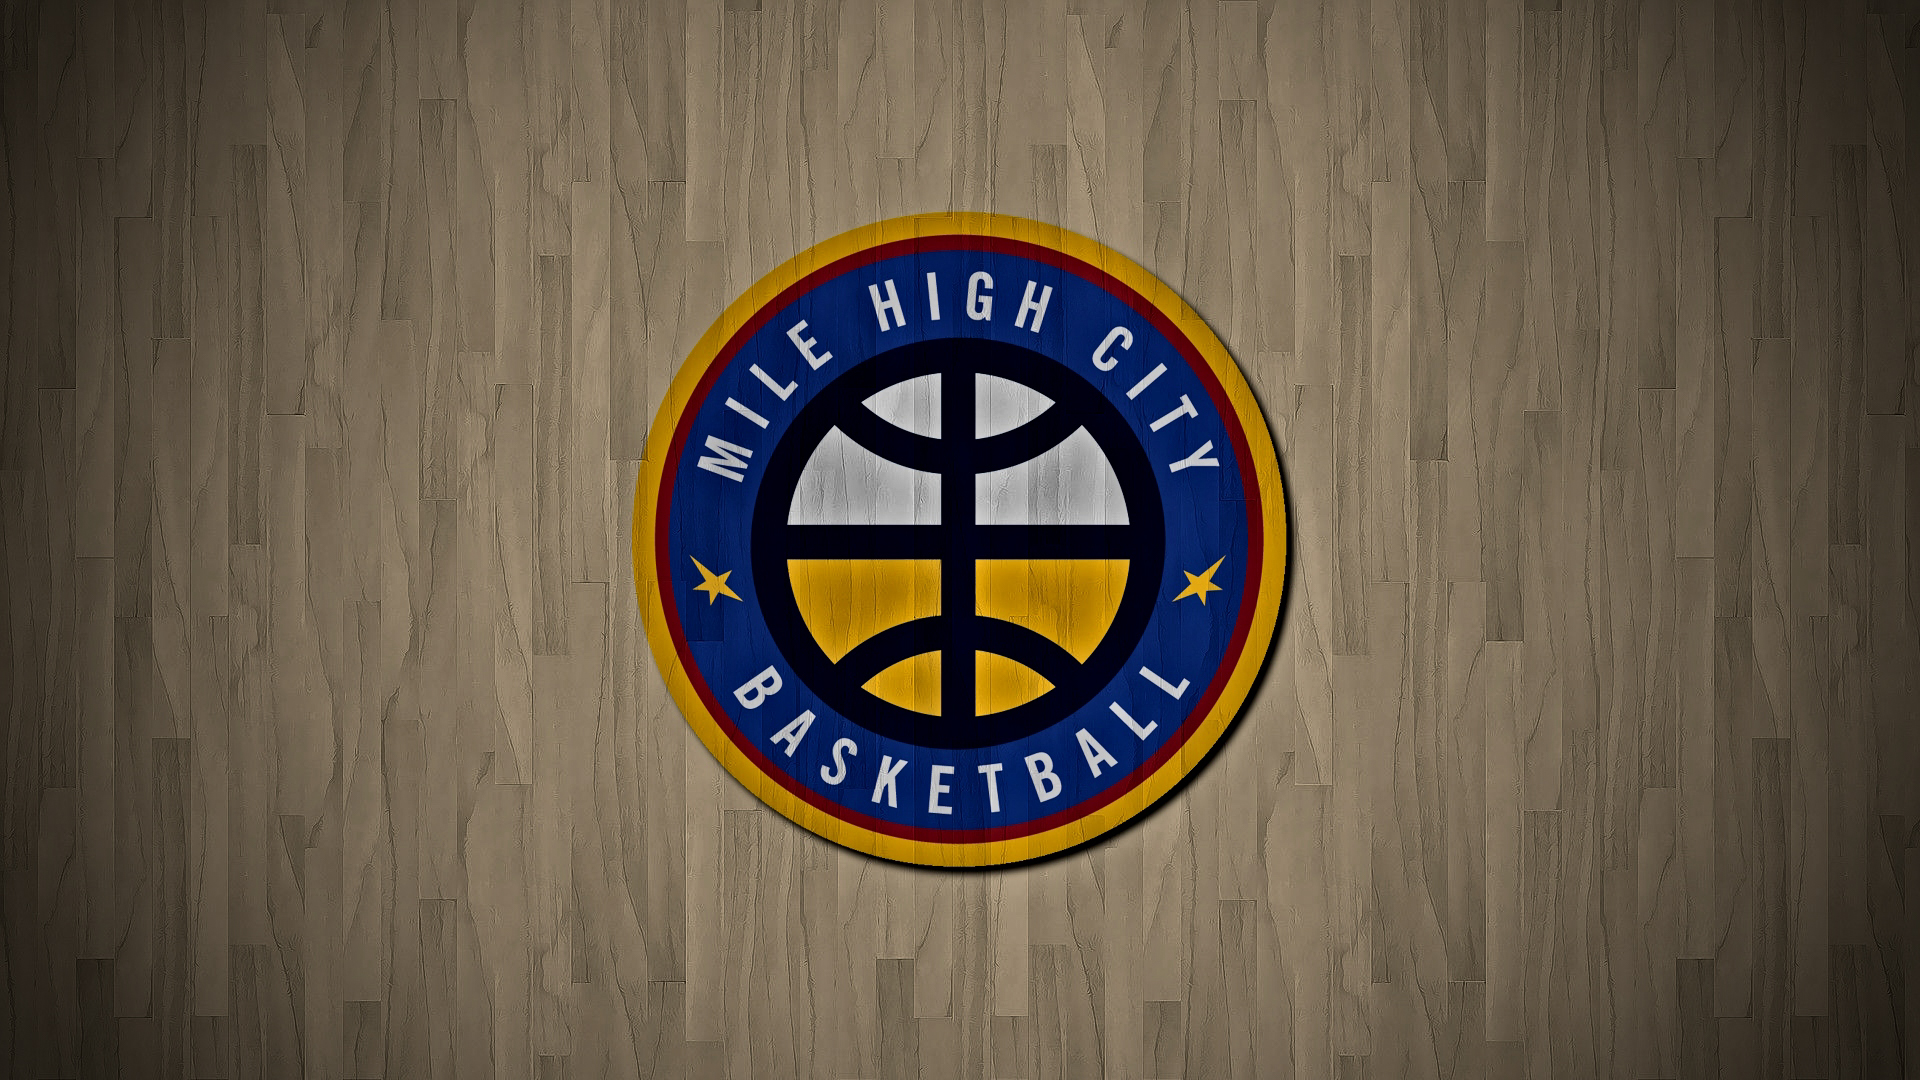 General 1920x1080 Denver Nuggets NBA logo basketball Denver Mile High City simple background minimalism